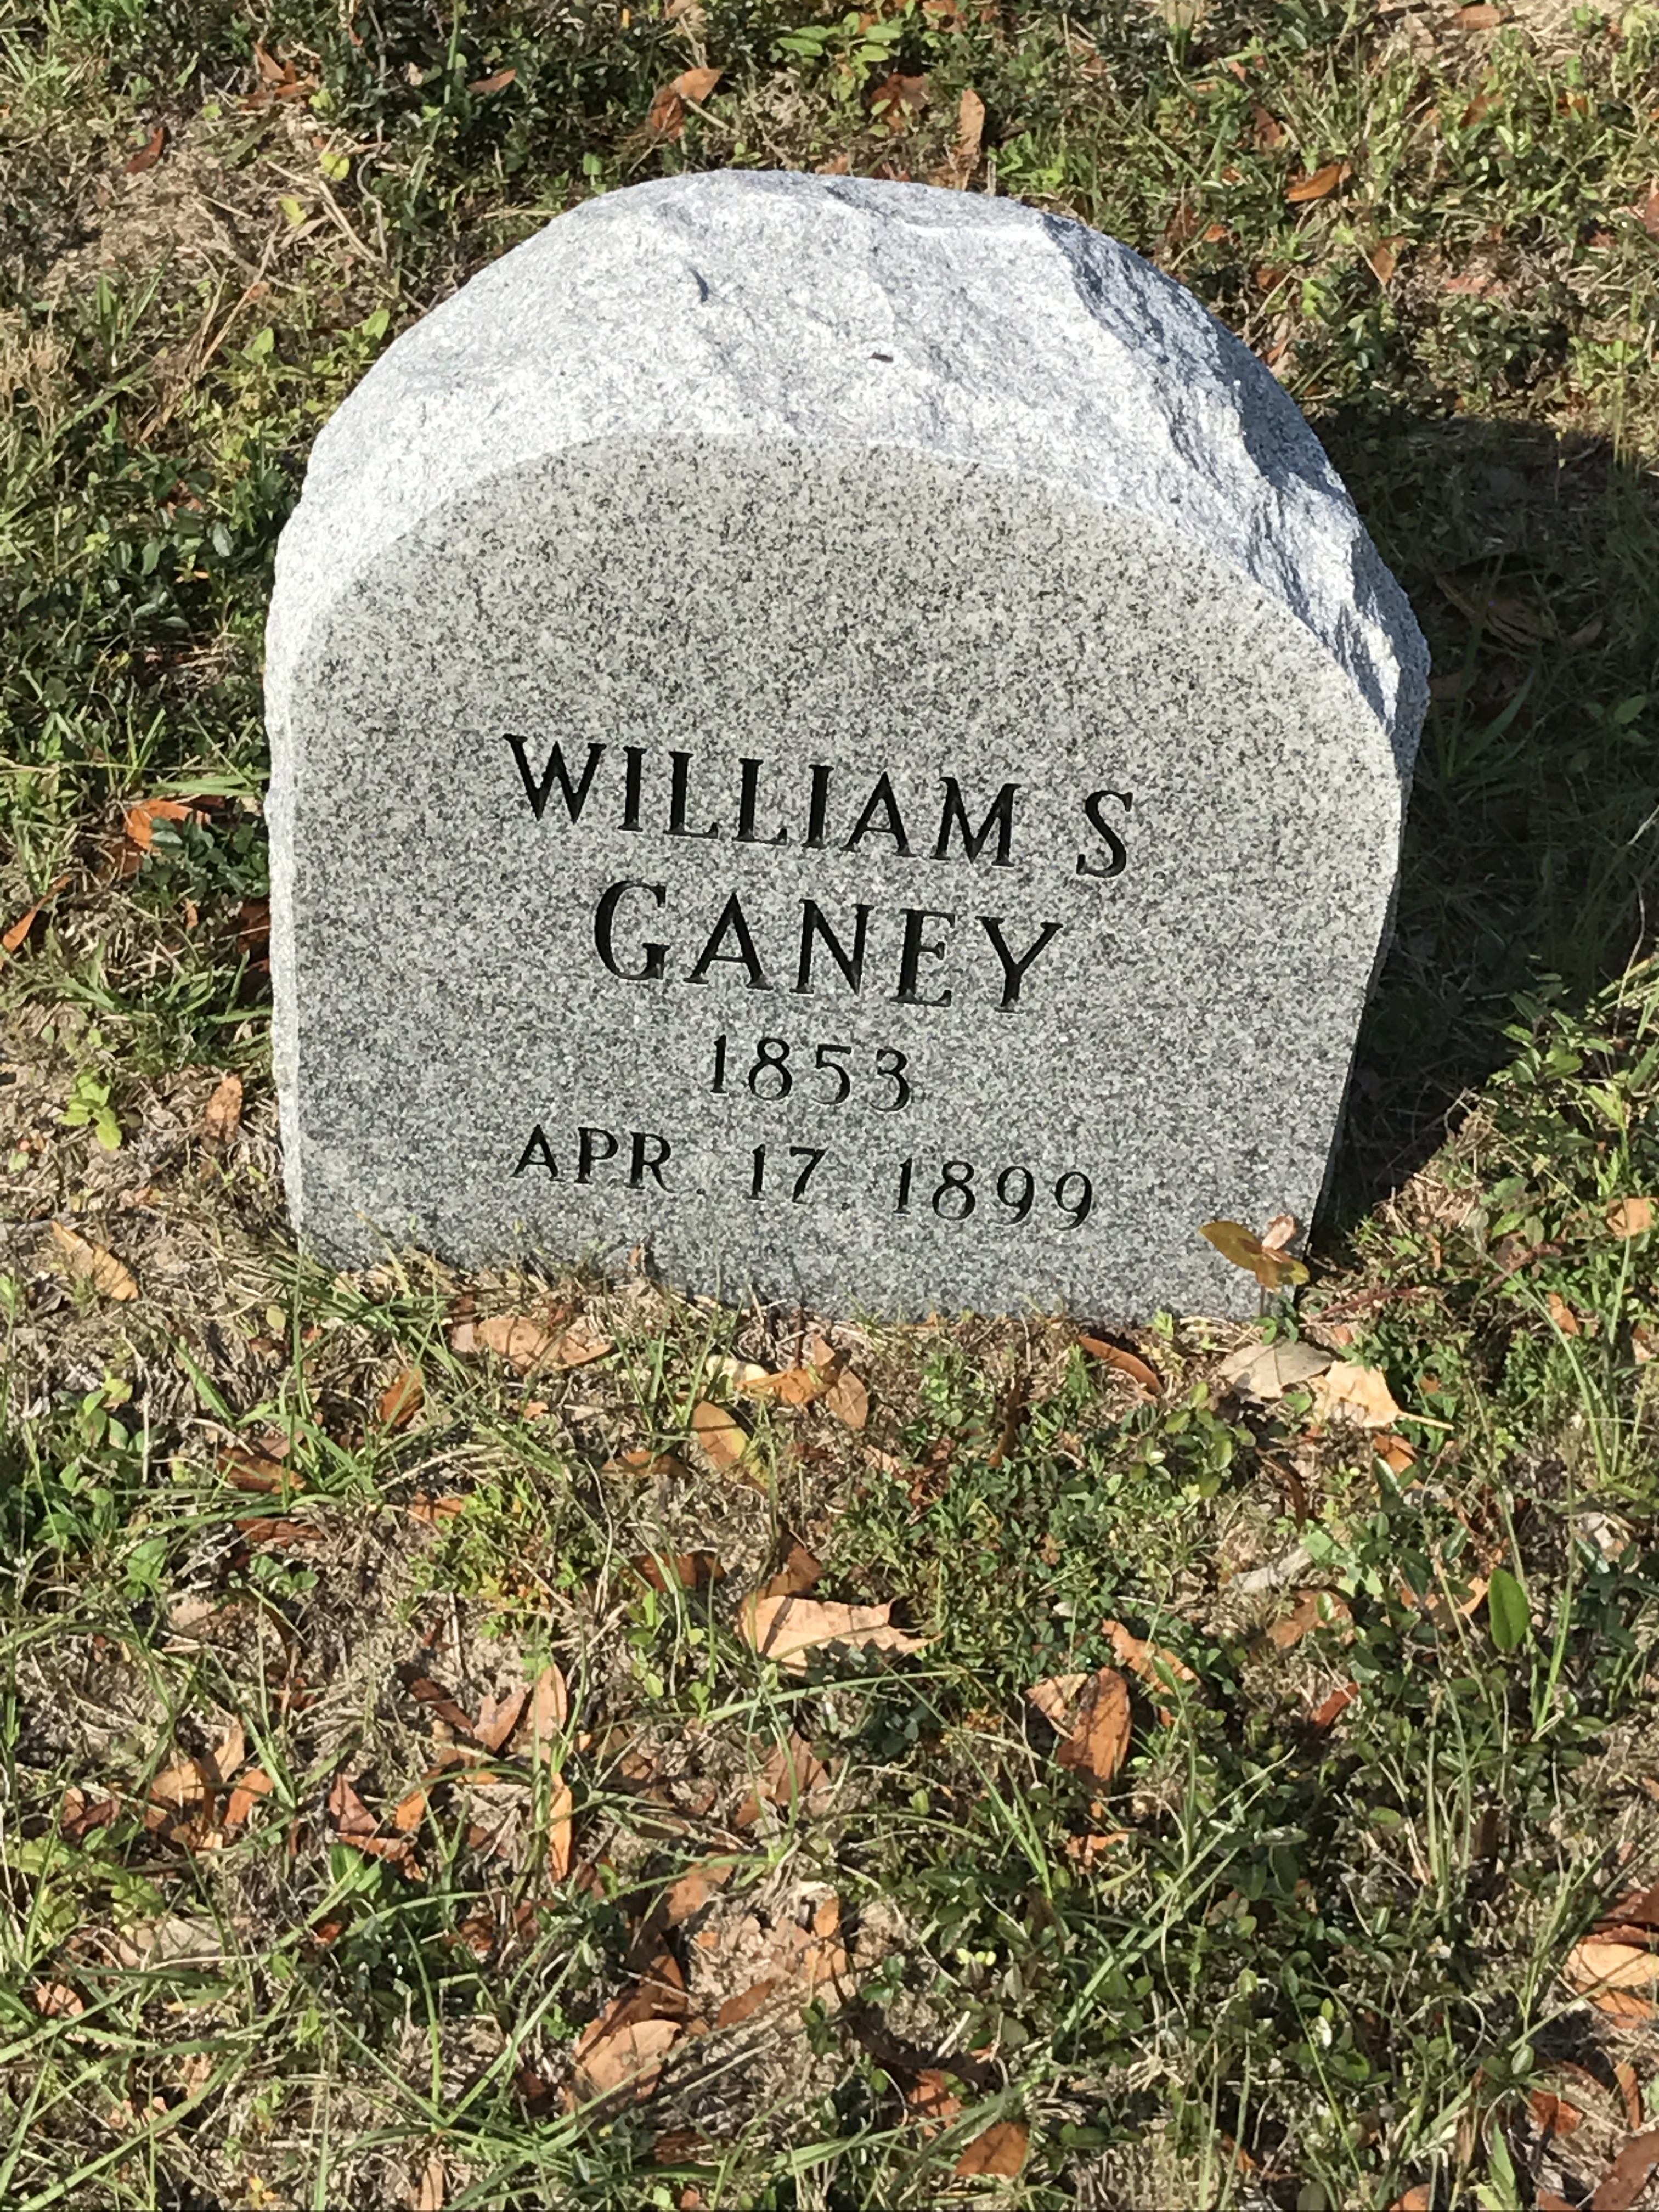 William S. Ganey